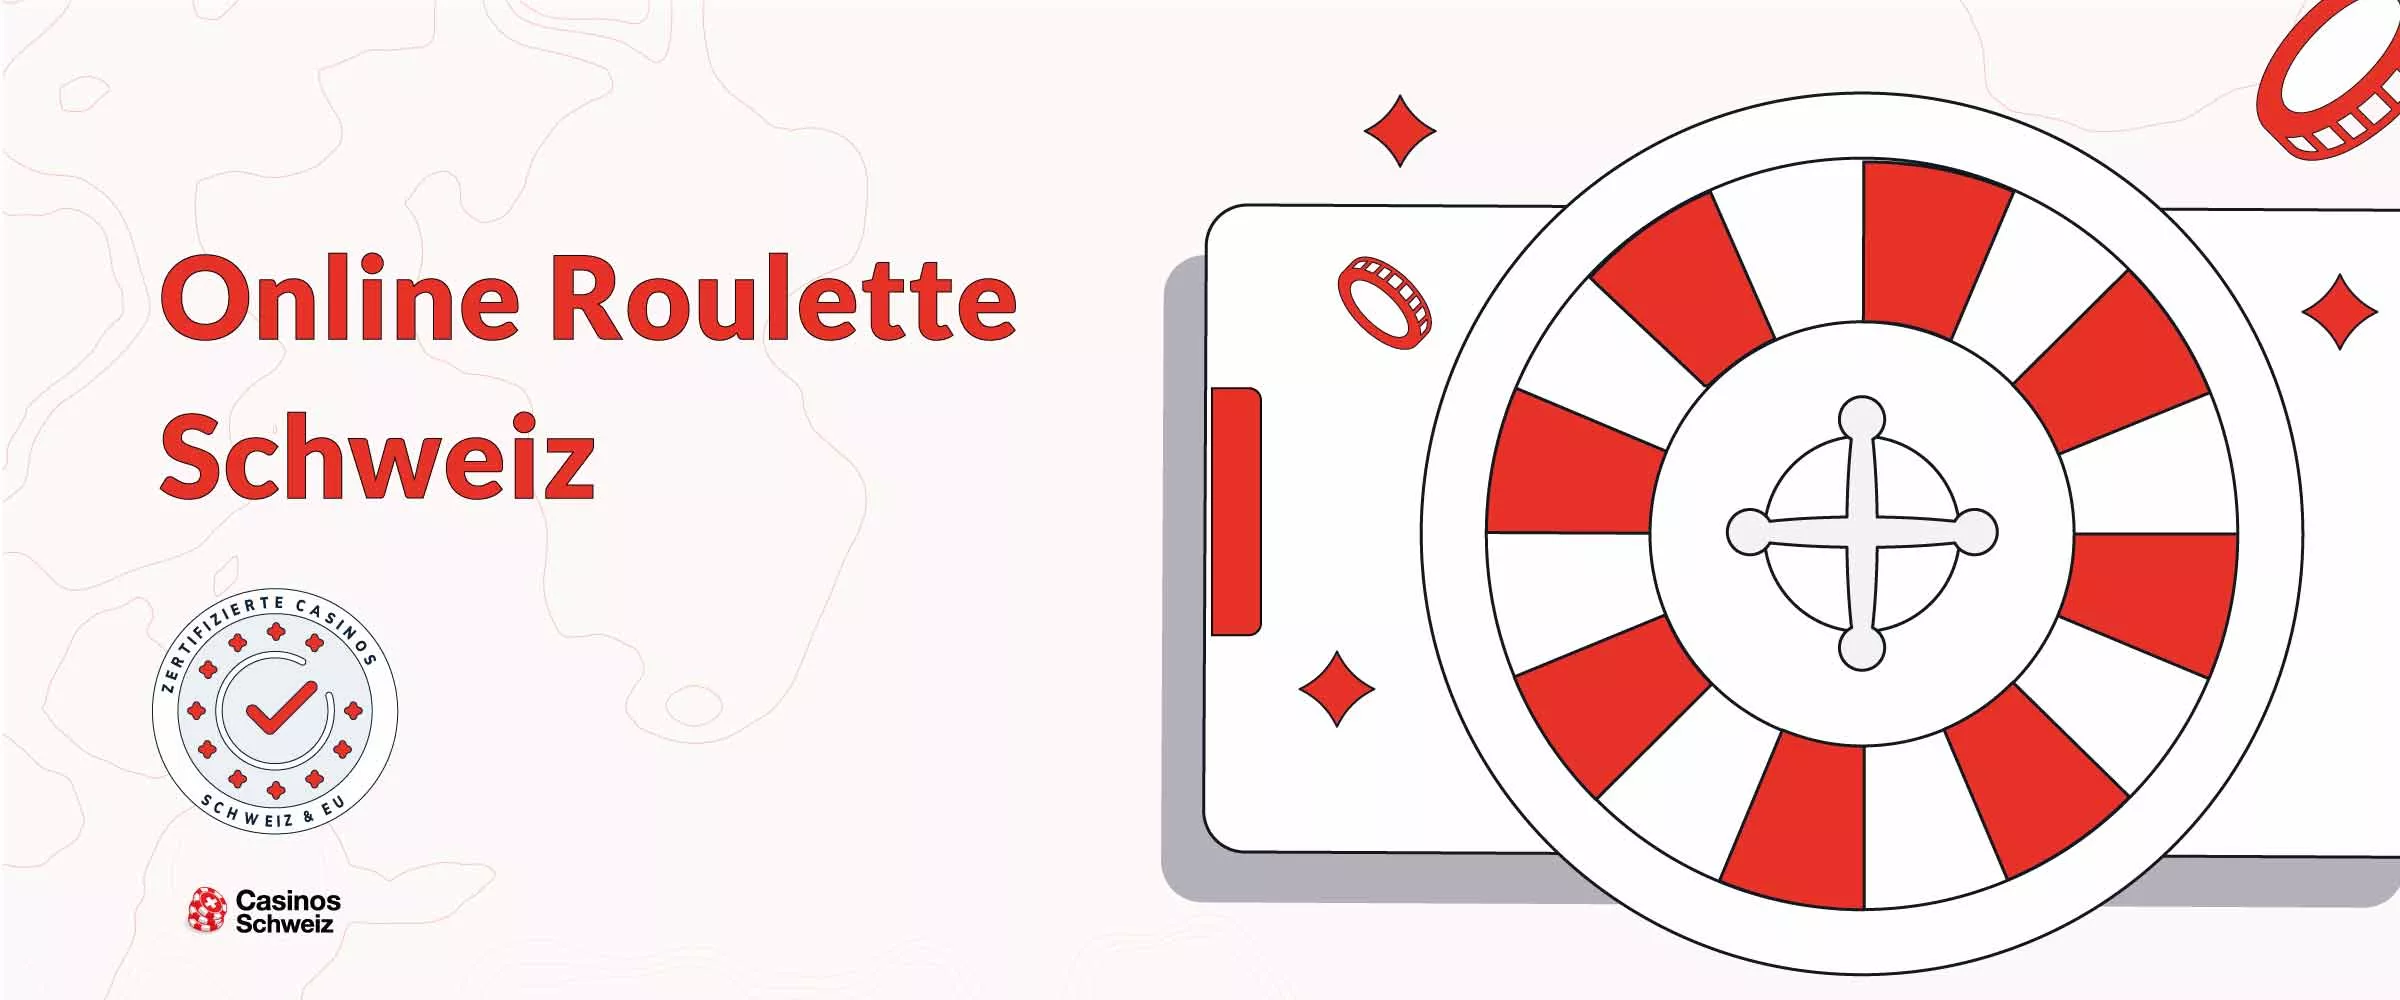 Online Roulette Schweiz